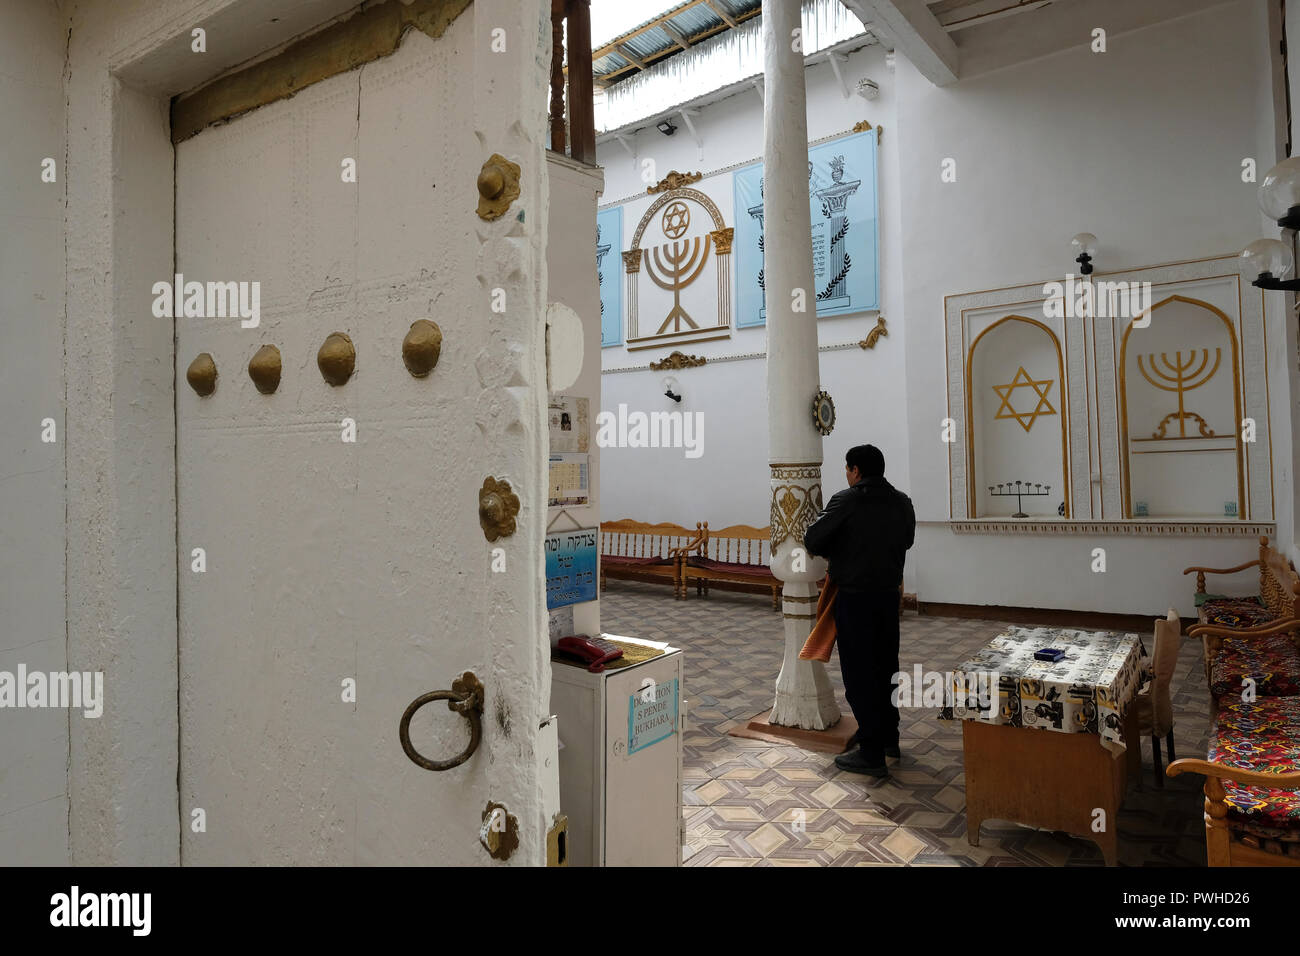 Eingang zum alten Buchara jüdische Synagoge, die stammt aus dem 16. Jahrhundert in der Stadt Samarkand, Buchara im 19. und frühen 20. Jahrhundert in Usbekistan. Auswanderung nach Israel und der Westen hat eine rasch schwindende Jüdische Gemeinschaft in Buchara Links, und nur etwa 500 Juden in der Stadt bleiben. Stockfoto